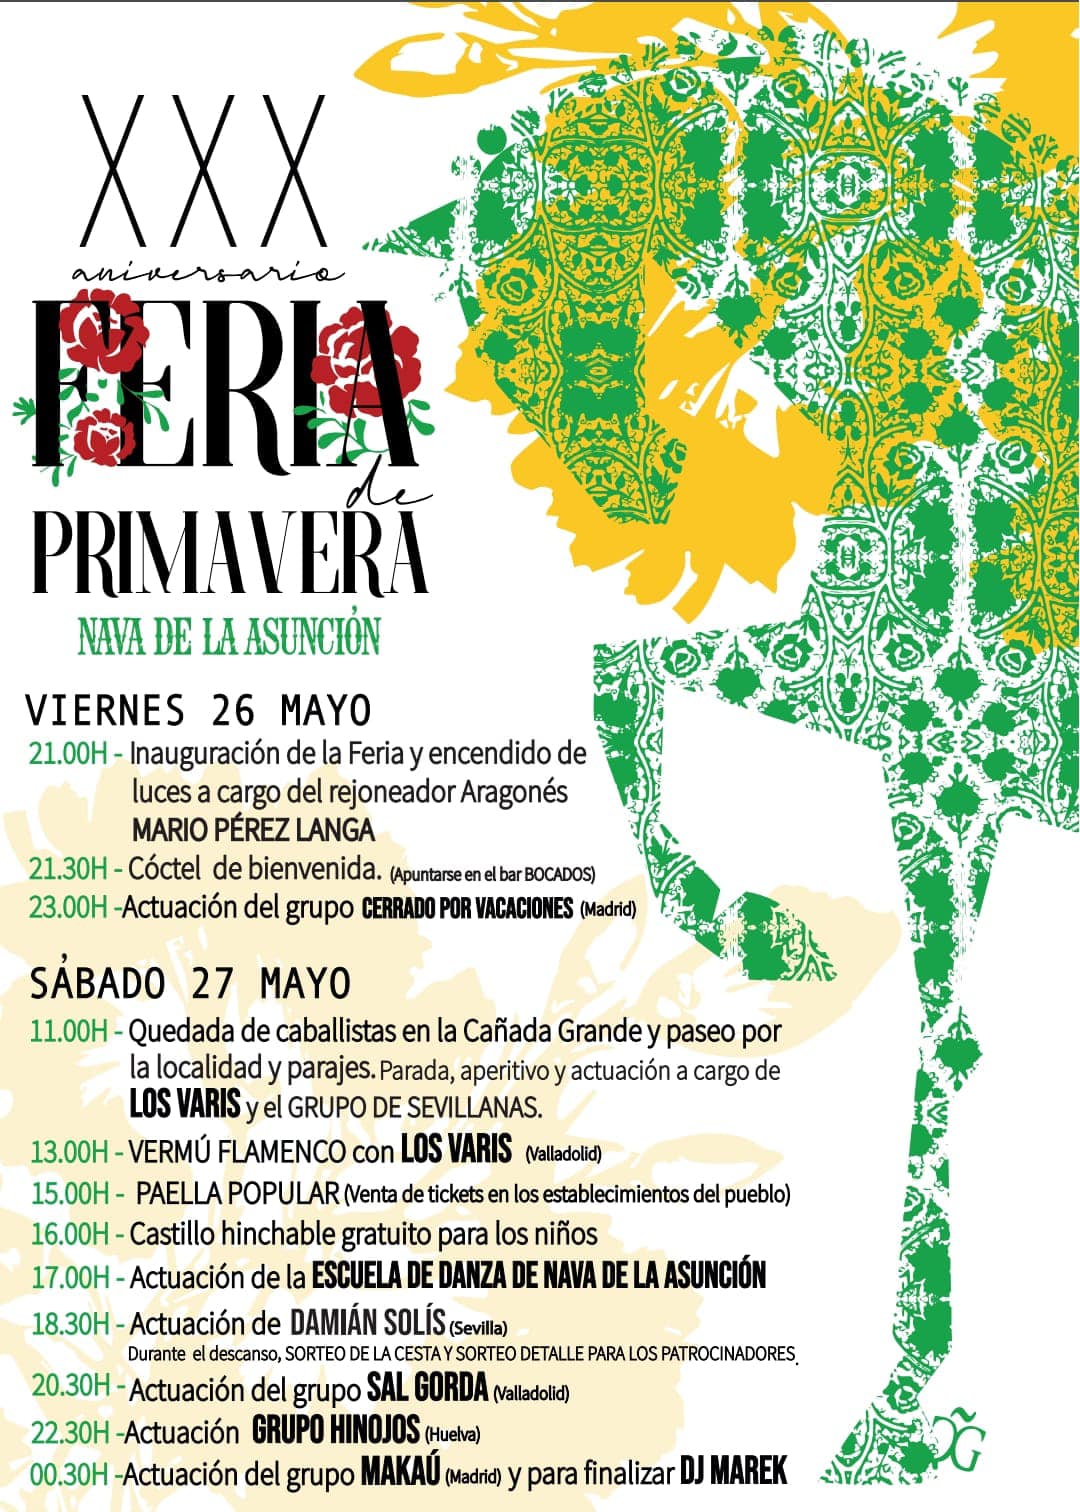 XXX Aniversario Feria de Primavera en Nava de la Asunción